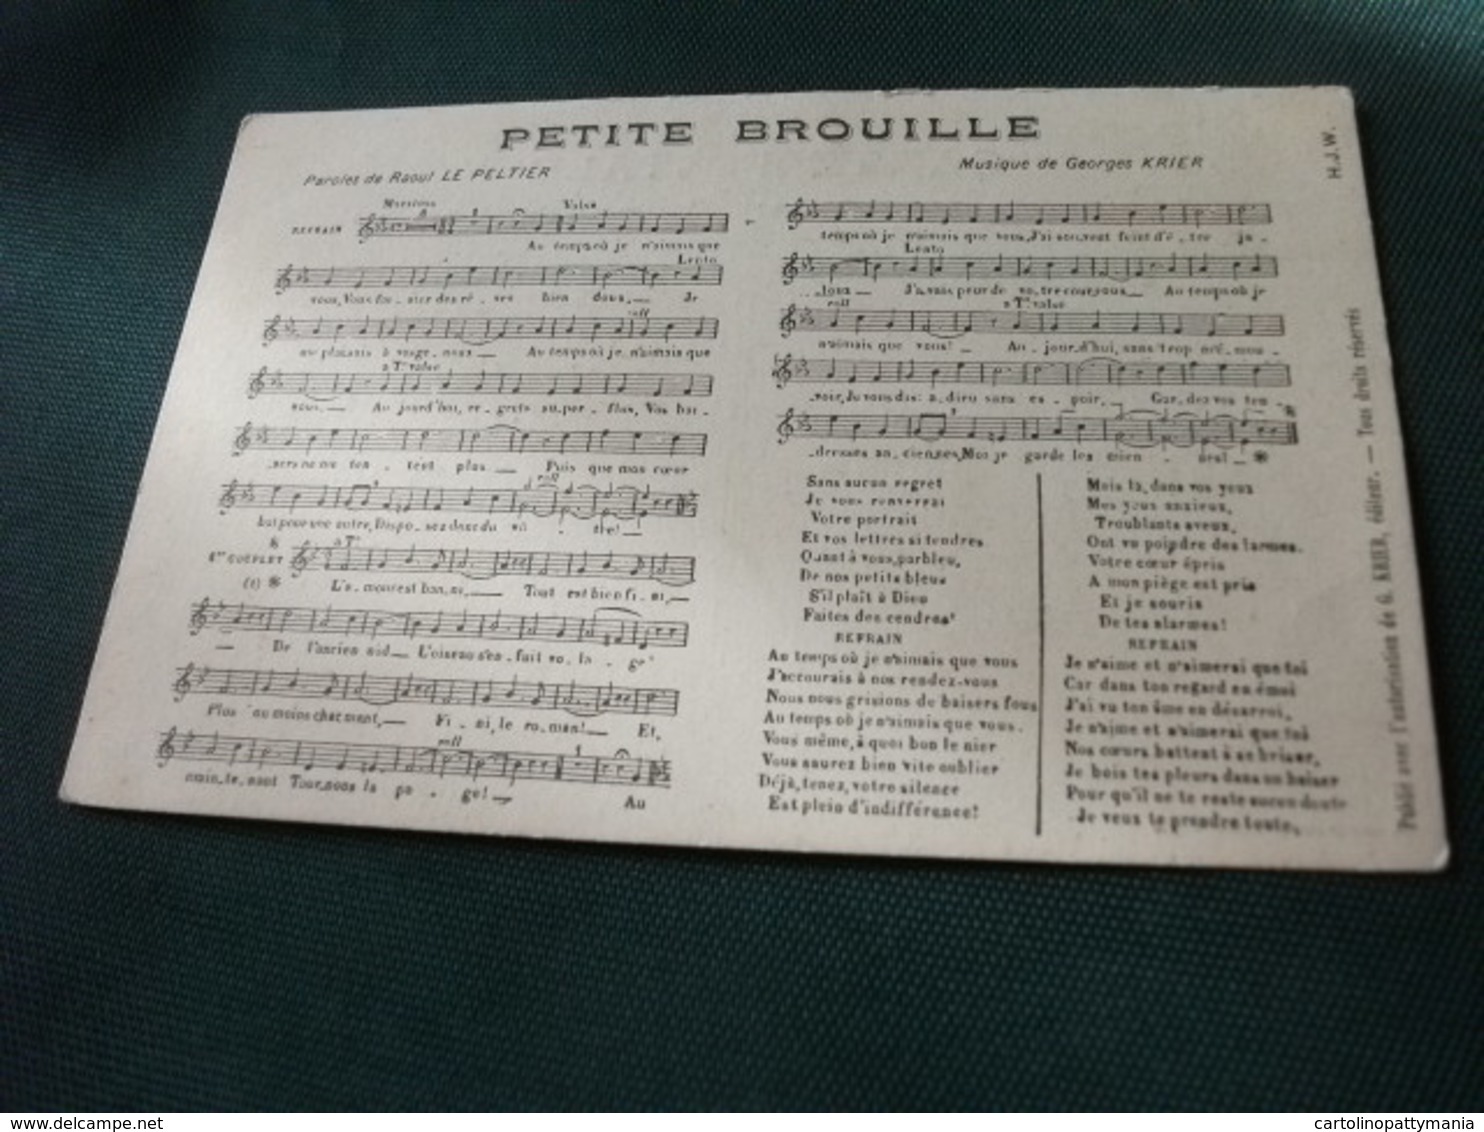 MUSICA SPARTITO MUSICALE PETITE BROUILLE PAROLE DI RAOUL LE PELTIER MUSICA DI GERGES KRIER - Musica E Musicisti